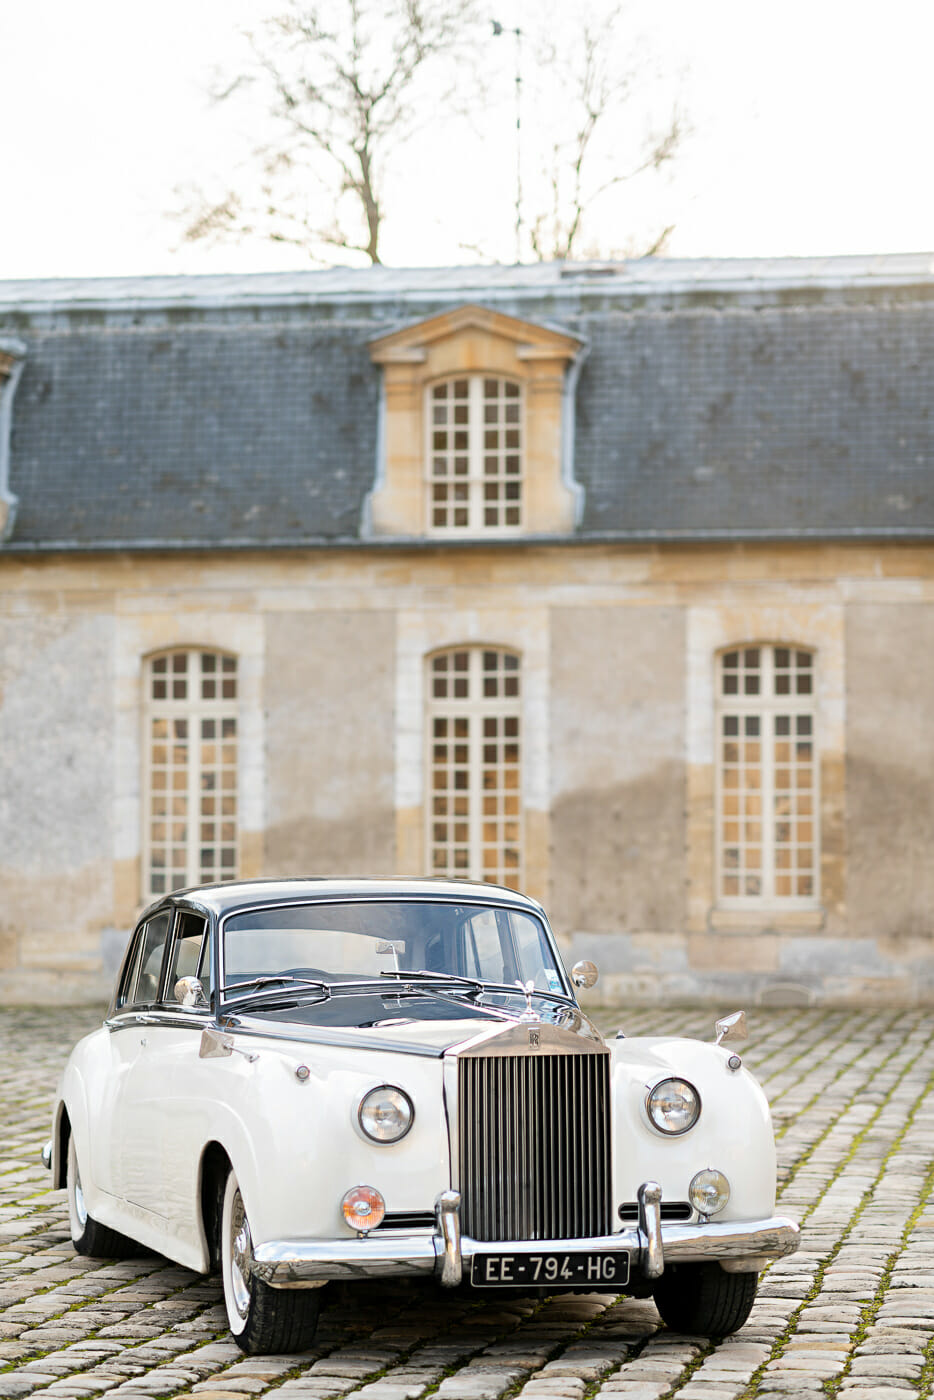 Vintage Rolls-Royce with driver at Chateau de Villette in Paris France